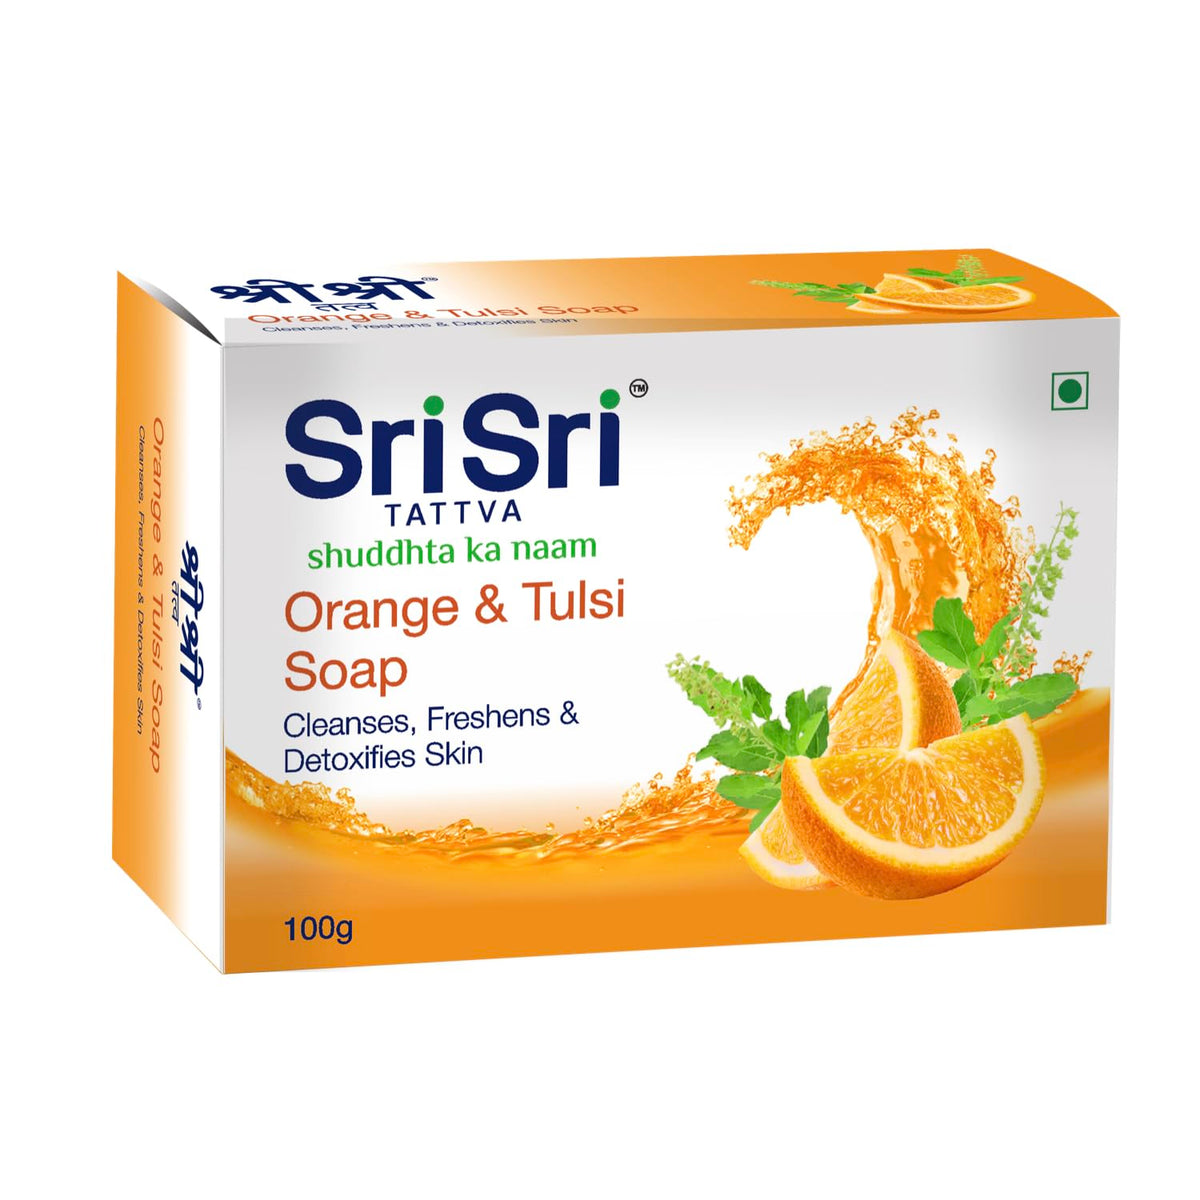 Sri Sri Tattva Orange & Tulsi Cleanses,Freshens & Detoxifies Skin Soap 100gm